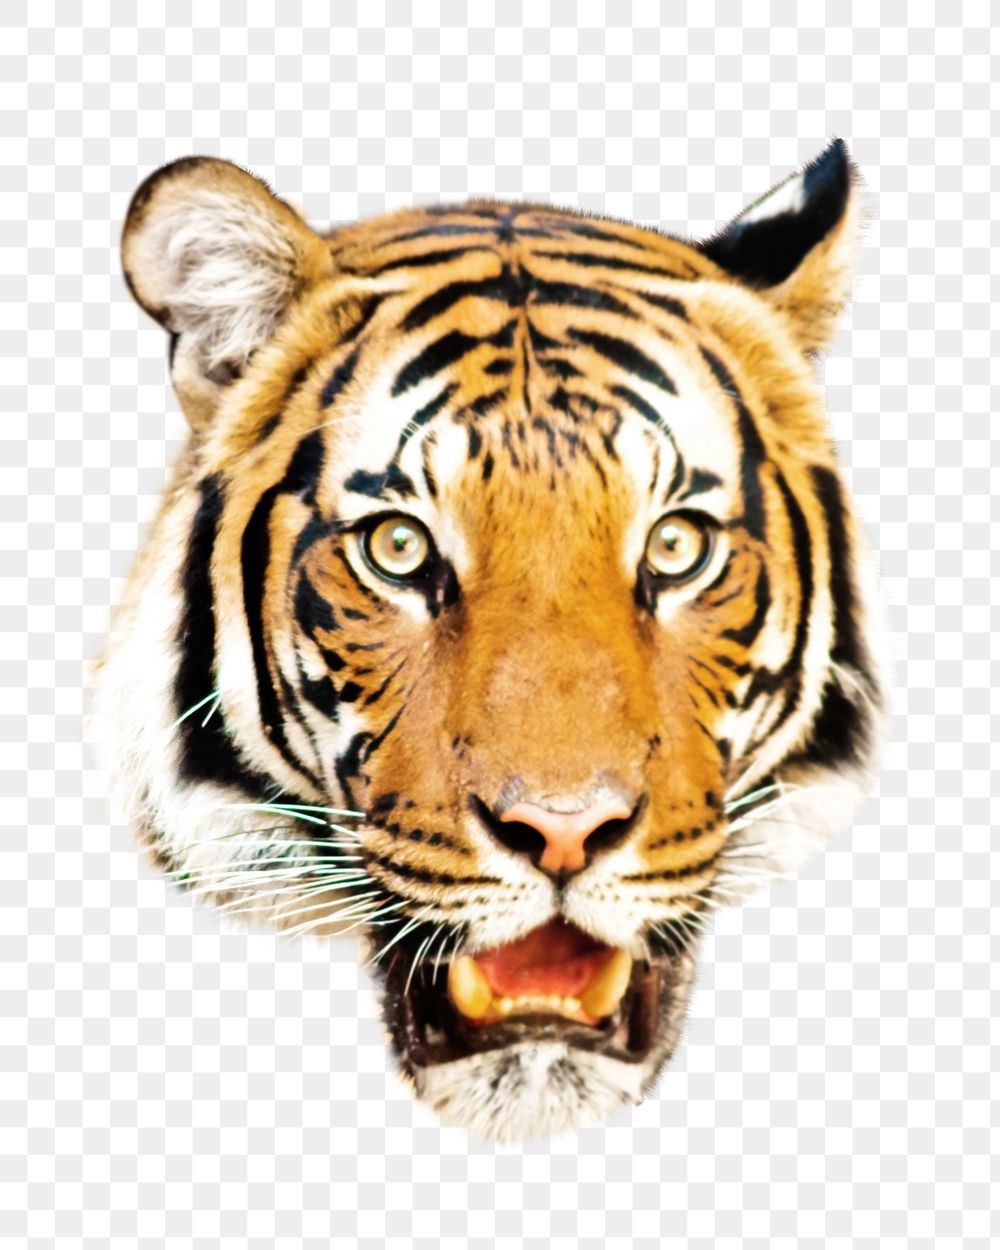 Tiger face png, design element, transparent background